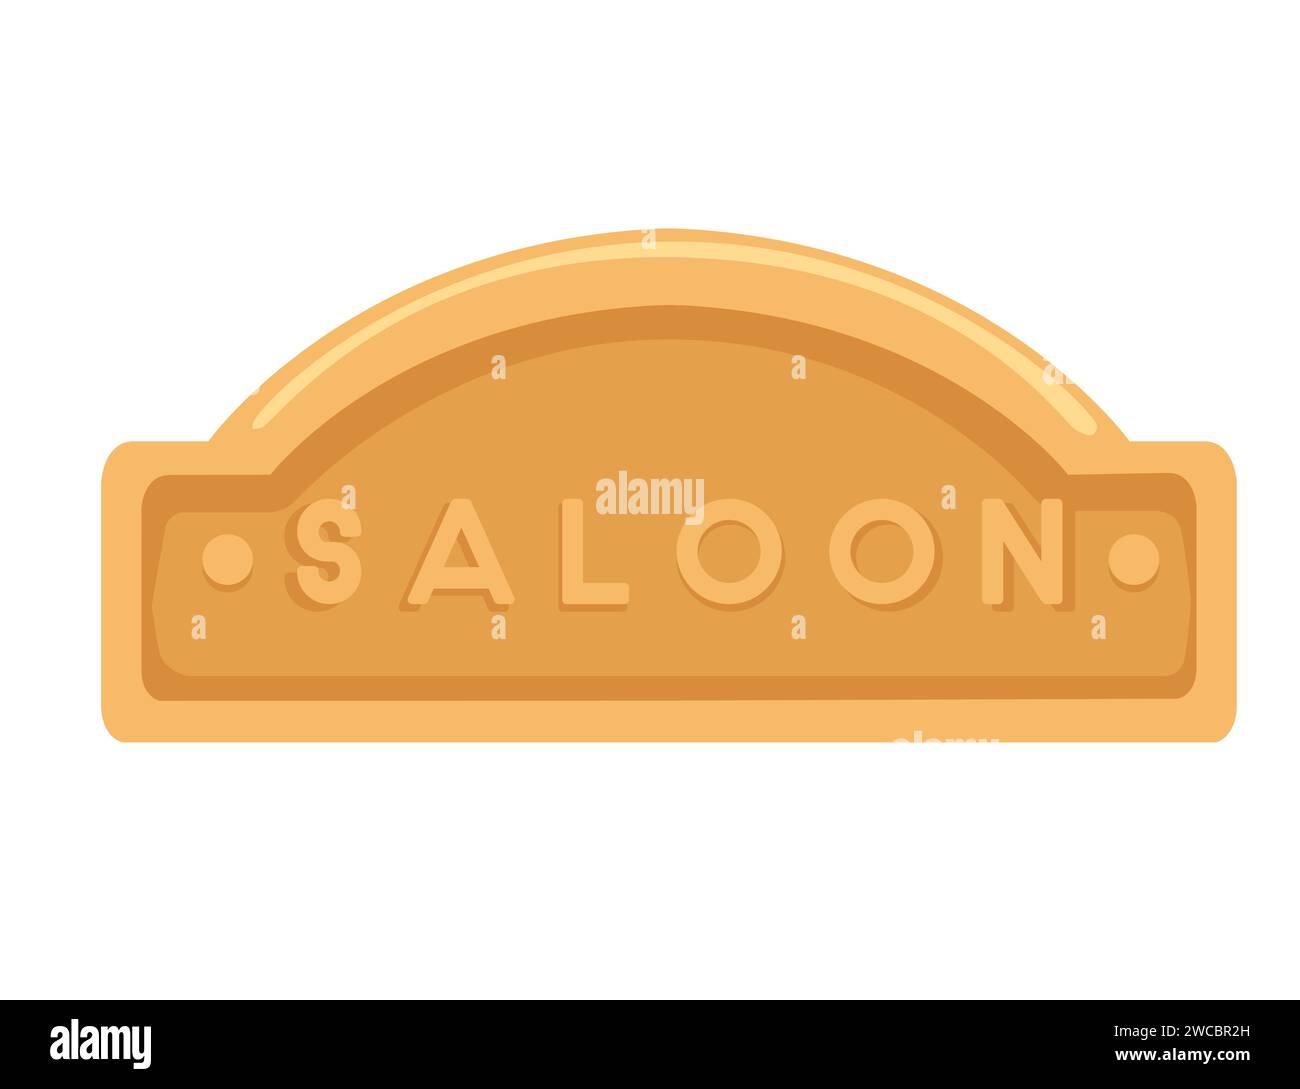 Signe de saloon en bois pour illustration vectorielle d'entrée de barre d'élément ouest isolé sur fond blanc Illustration de Vecteur